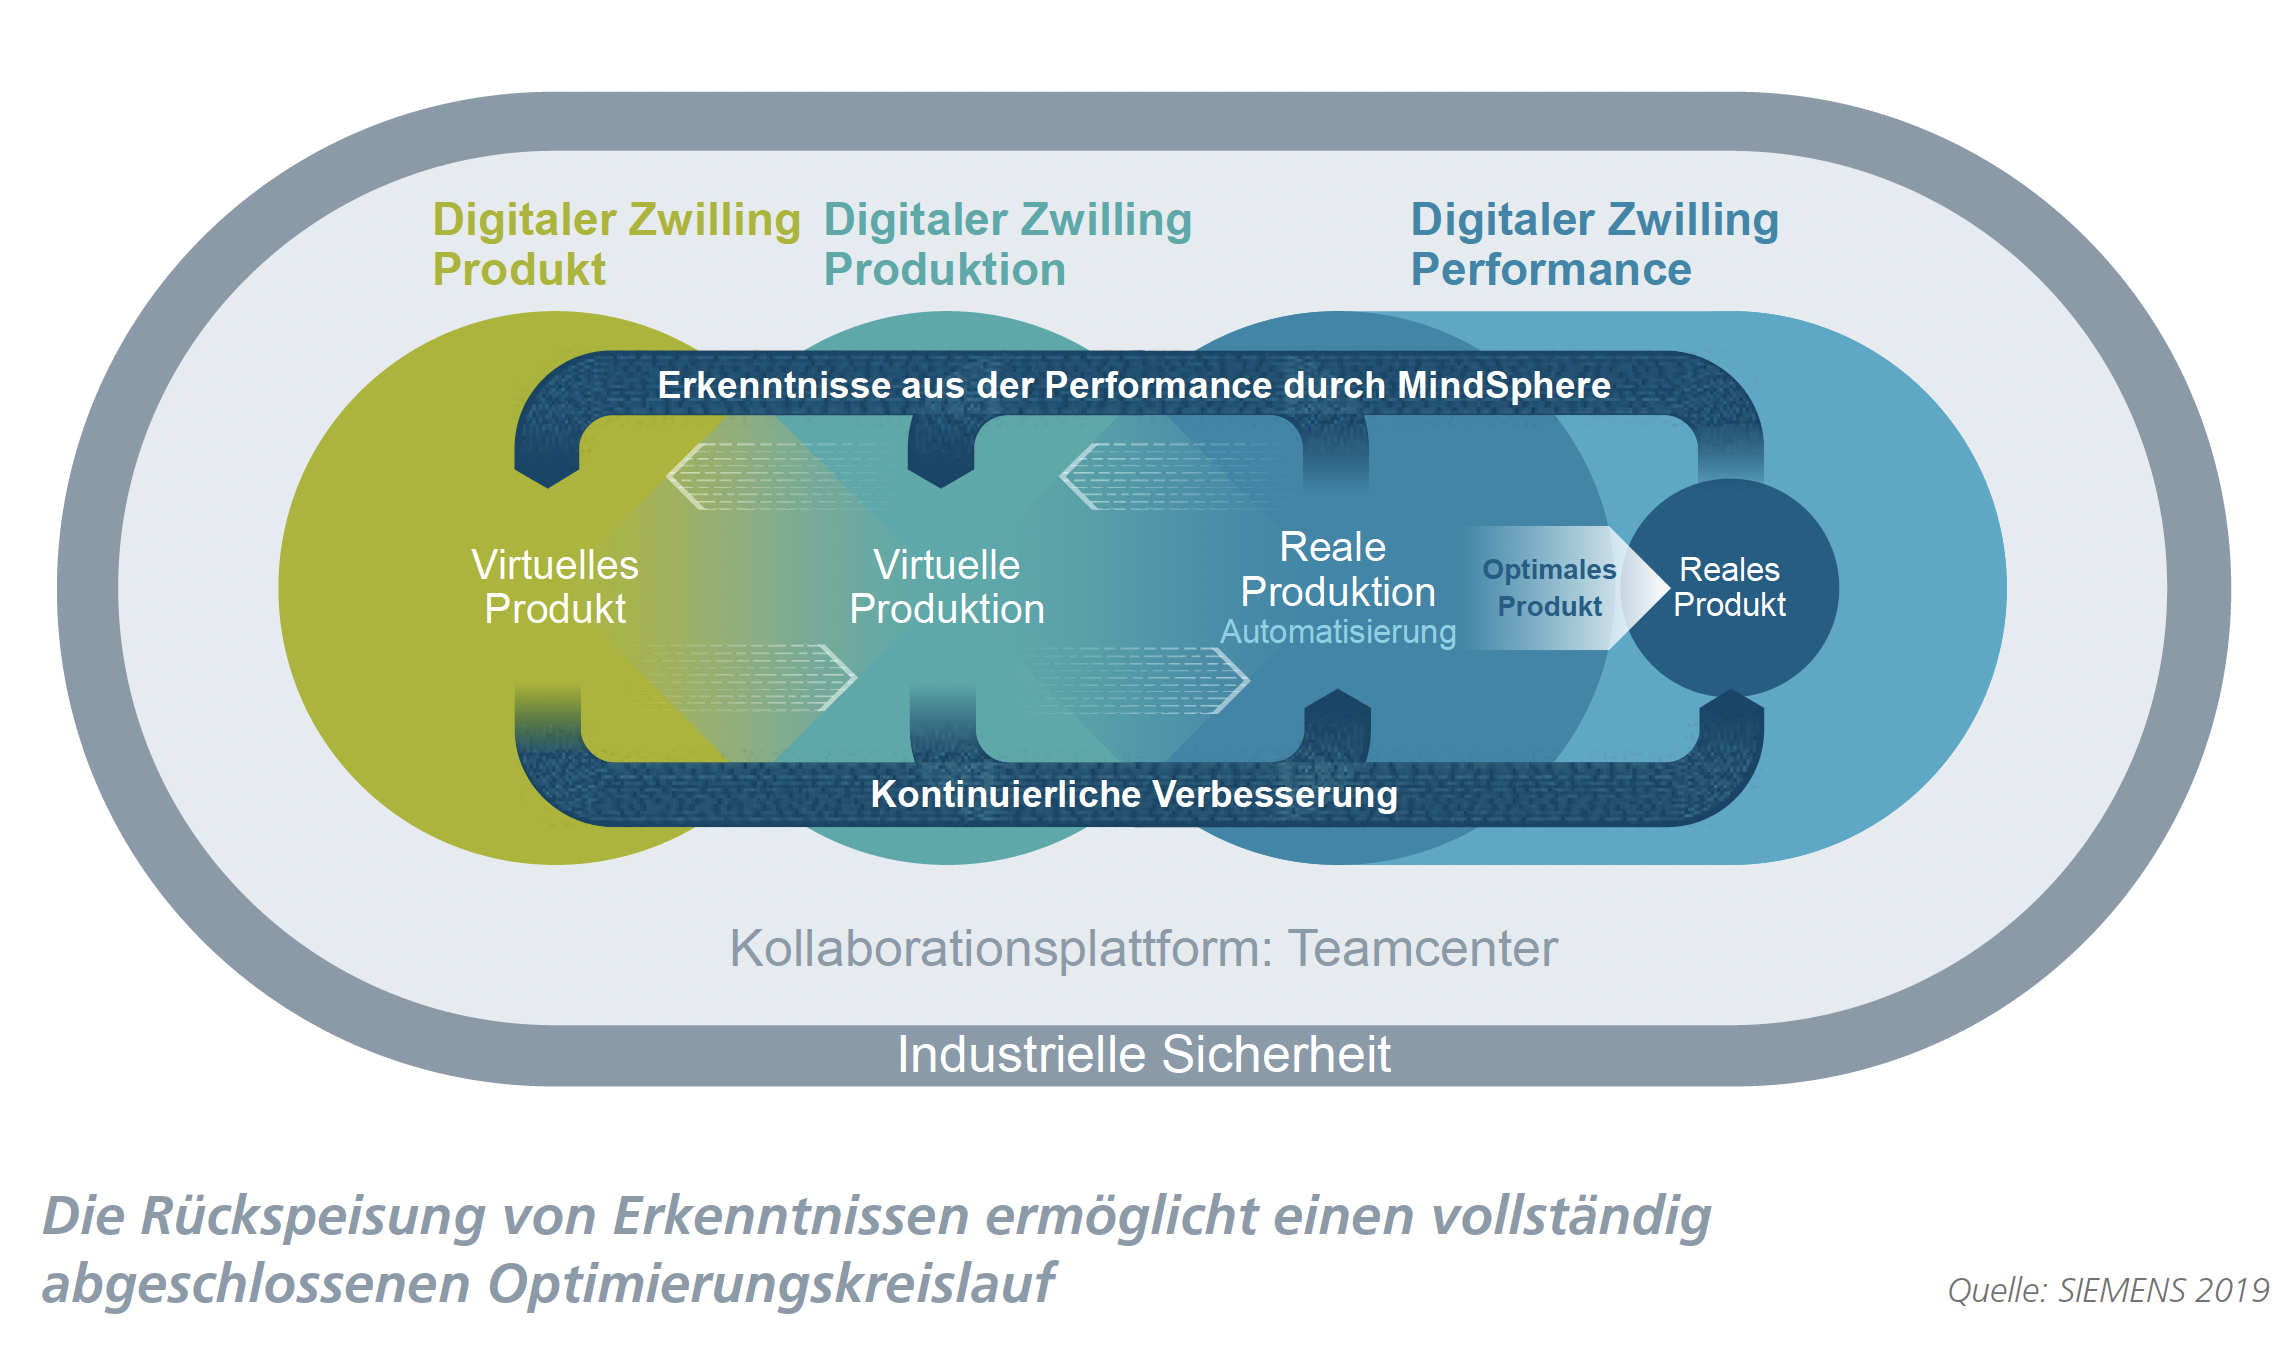 Optimierungskreislauf, Siemens AG